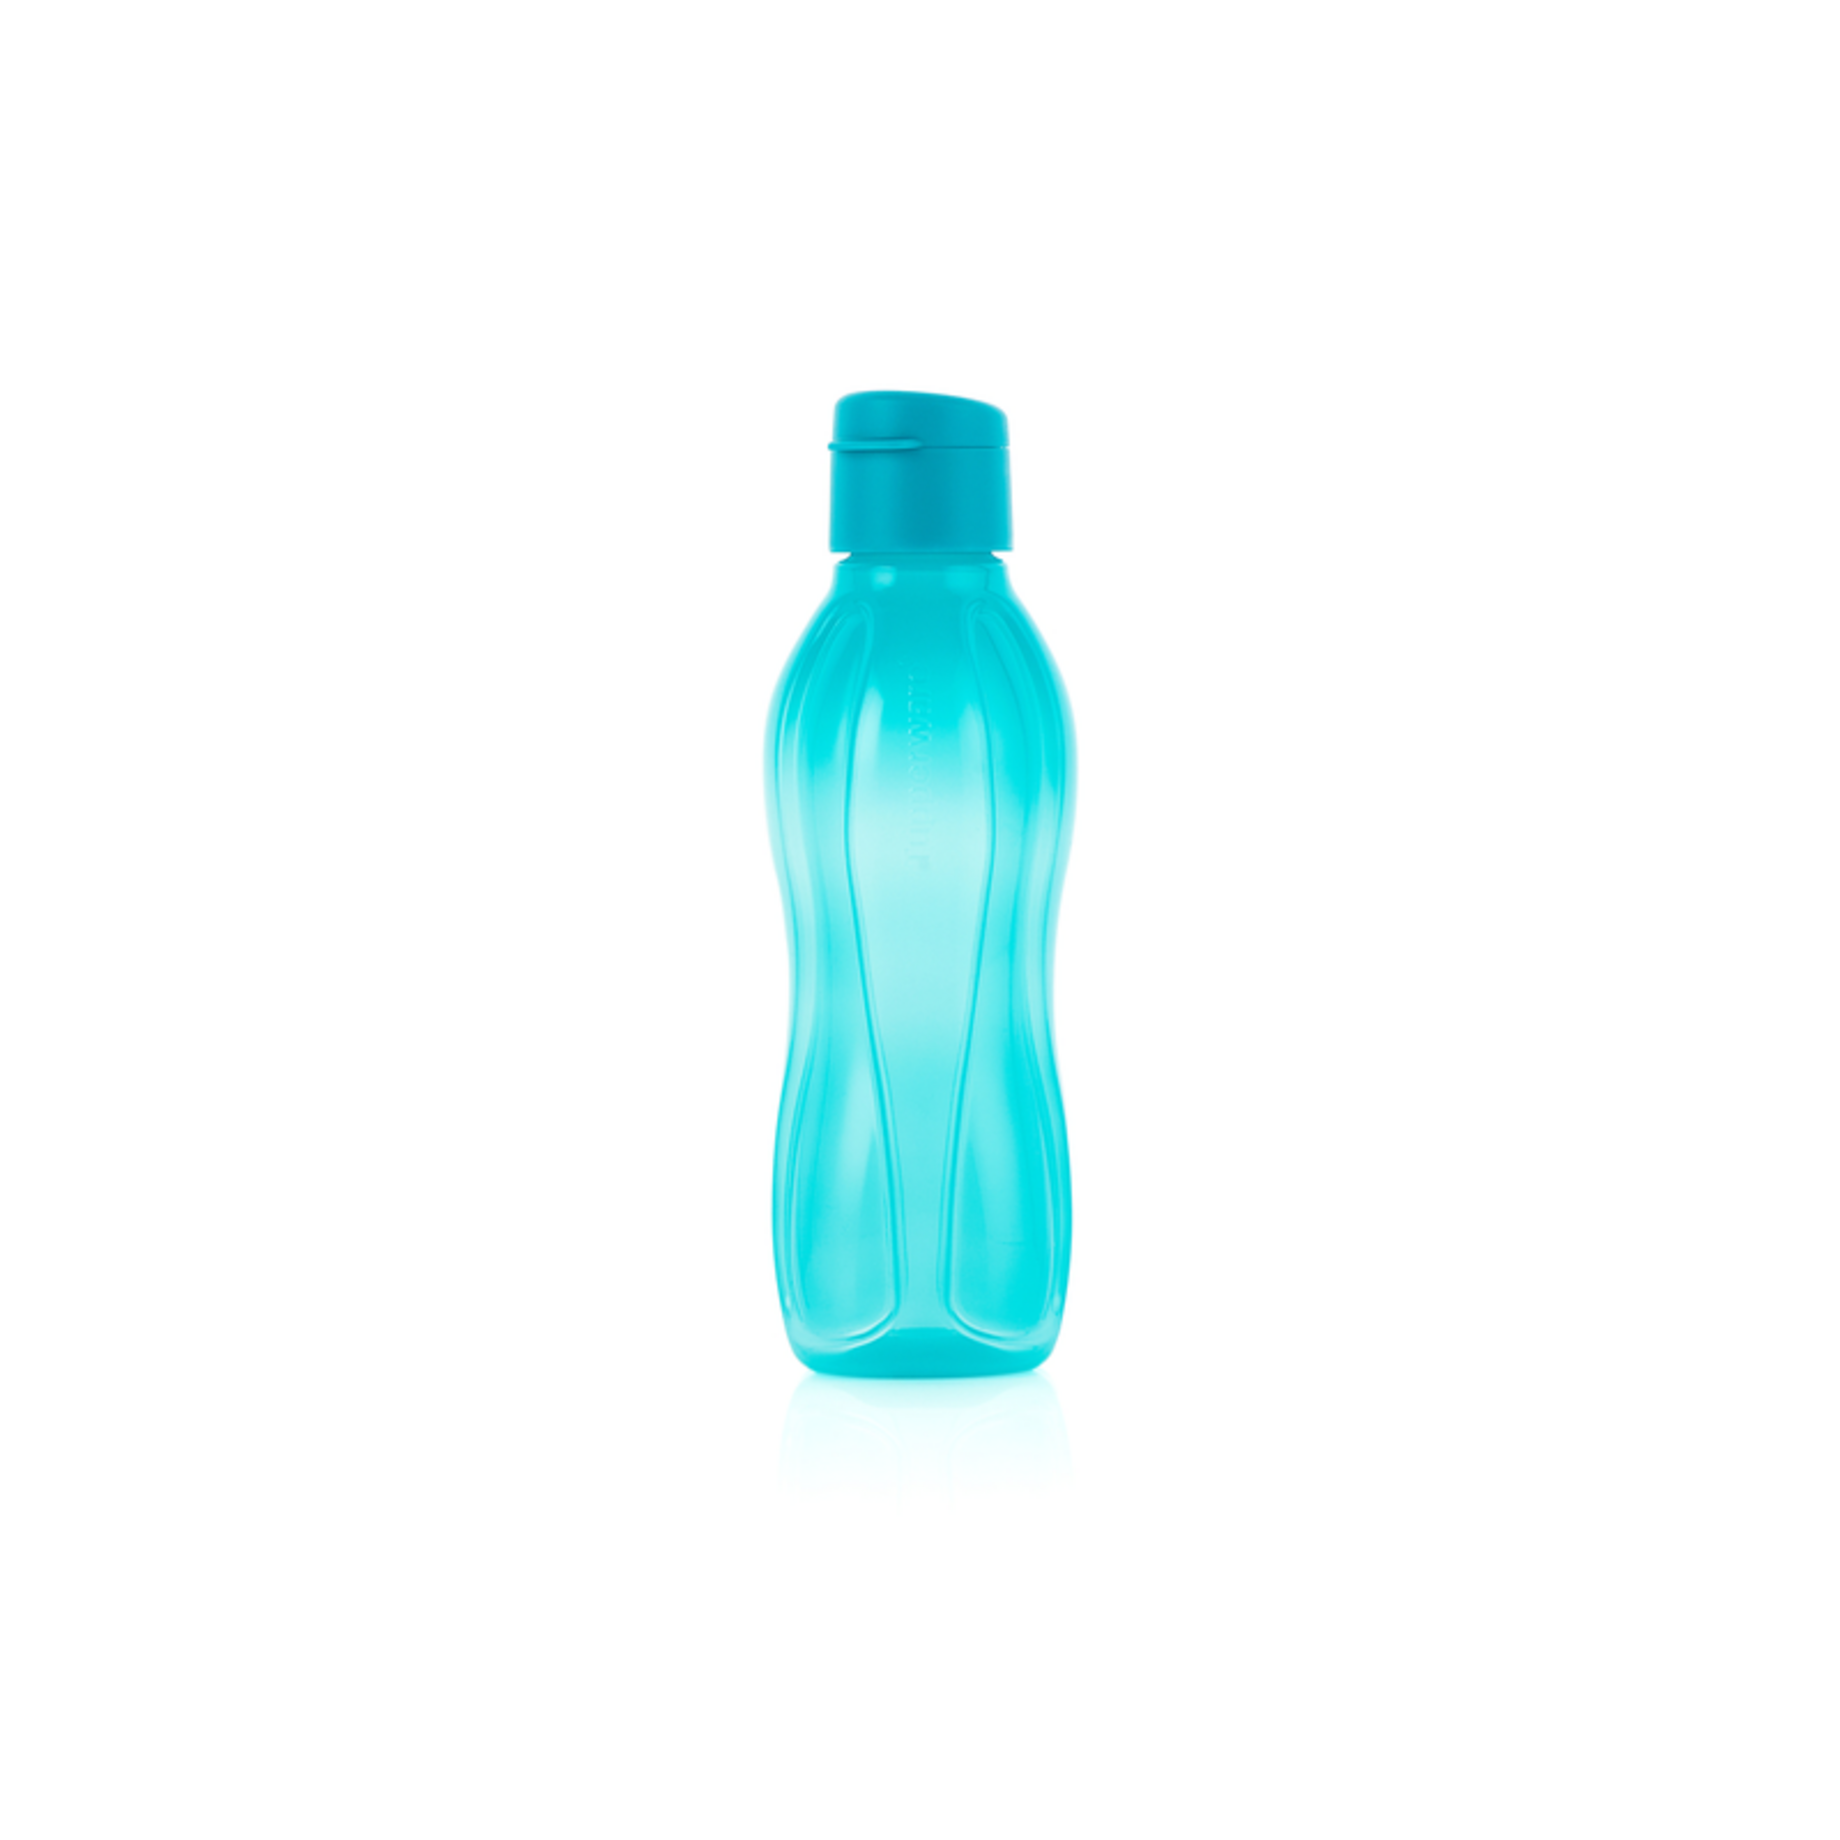 Room on Instagram: Botellas tupperware 500ml. #Botellas tupperware # tupperware #botella #botellasdeagua